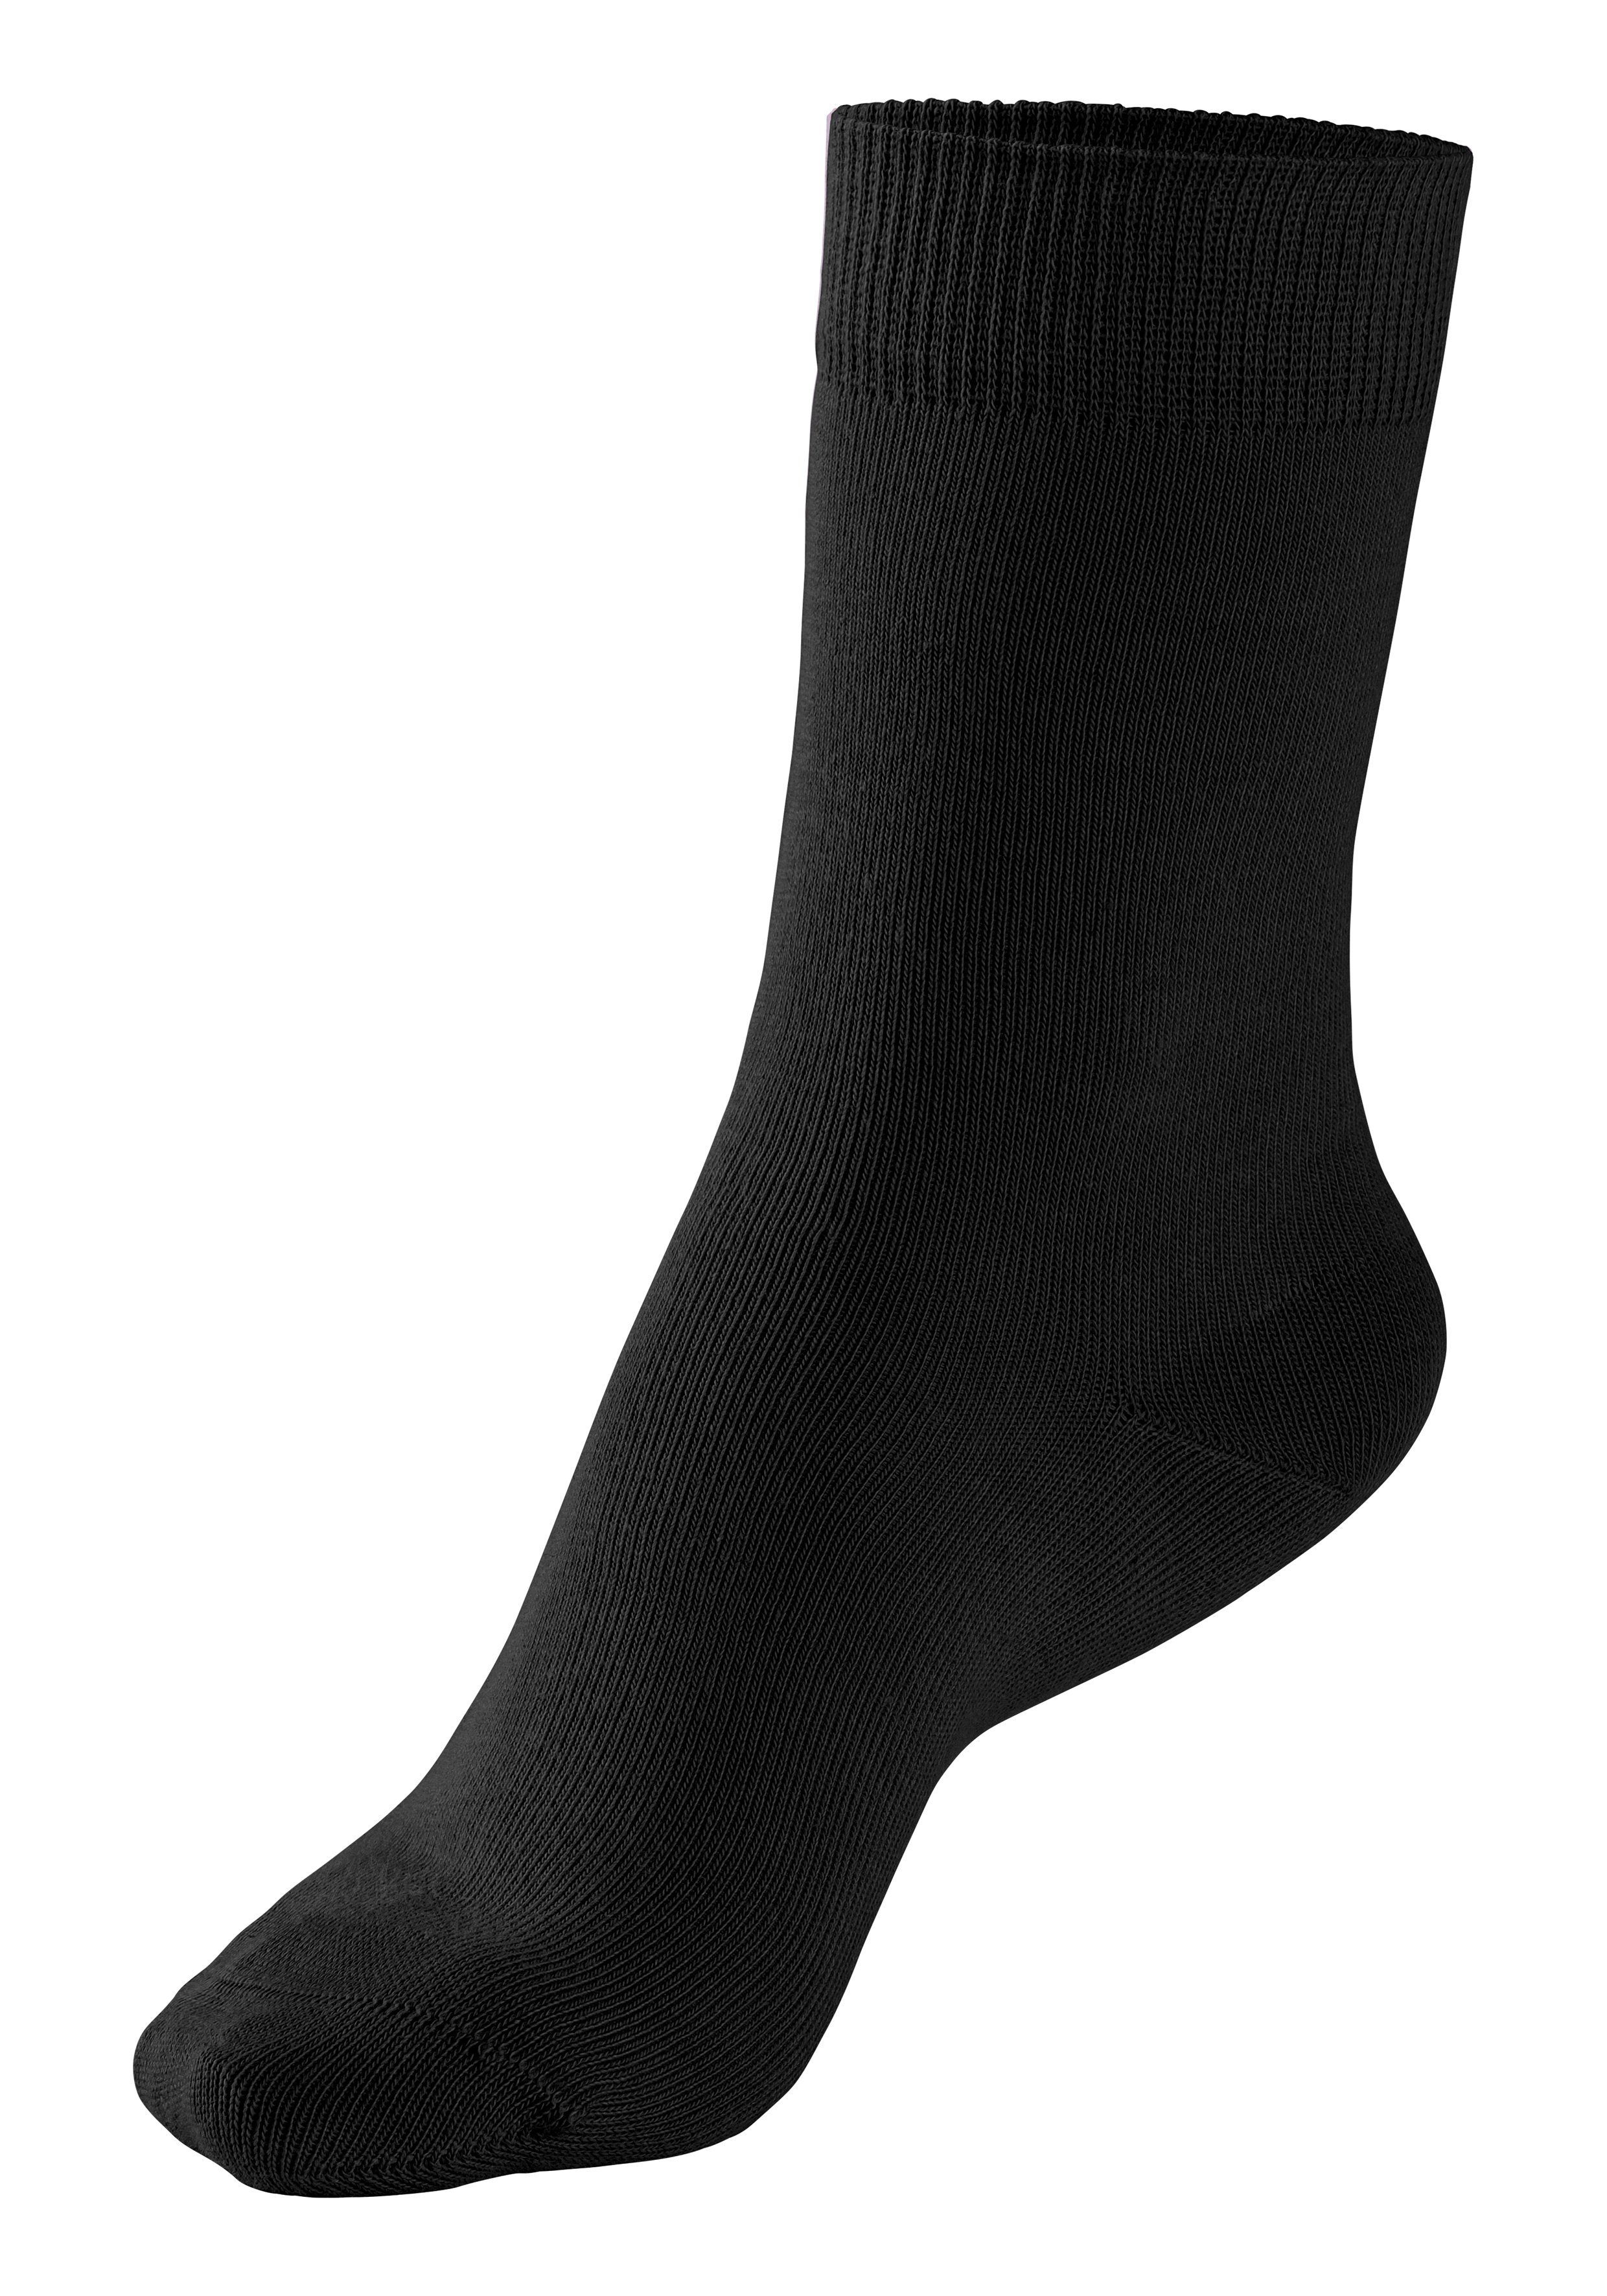 H.I.S Socken (Set, 4-Paar) 4x Farbzusammenstellungen in grau-schwarz unterschiedlichen